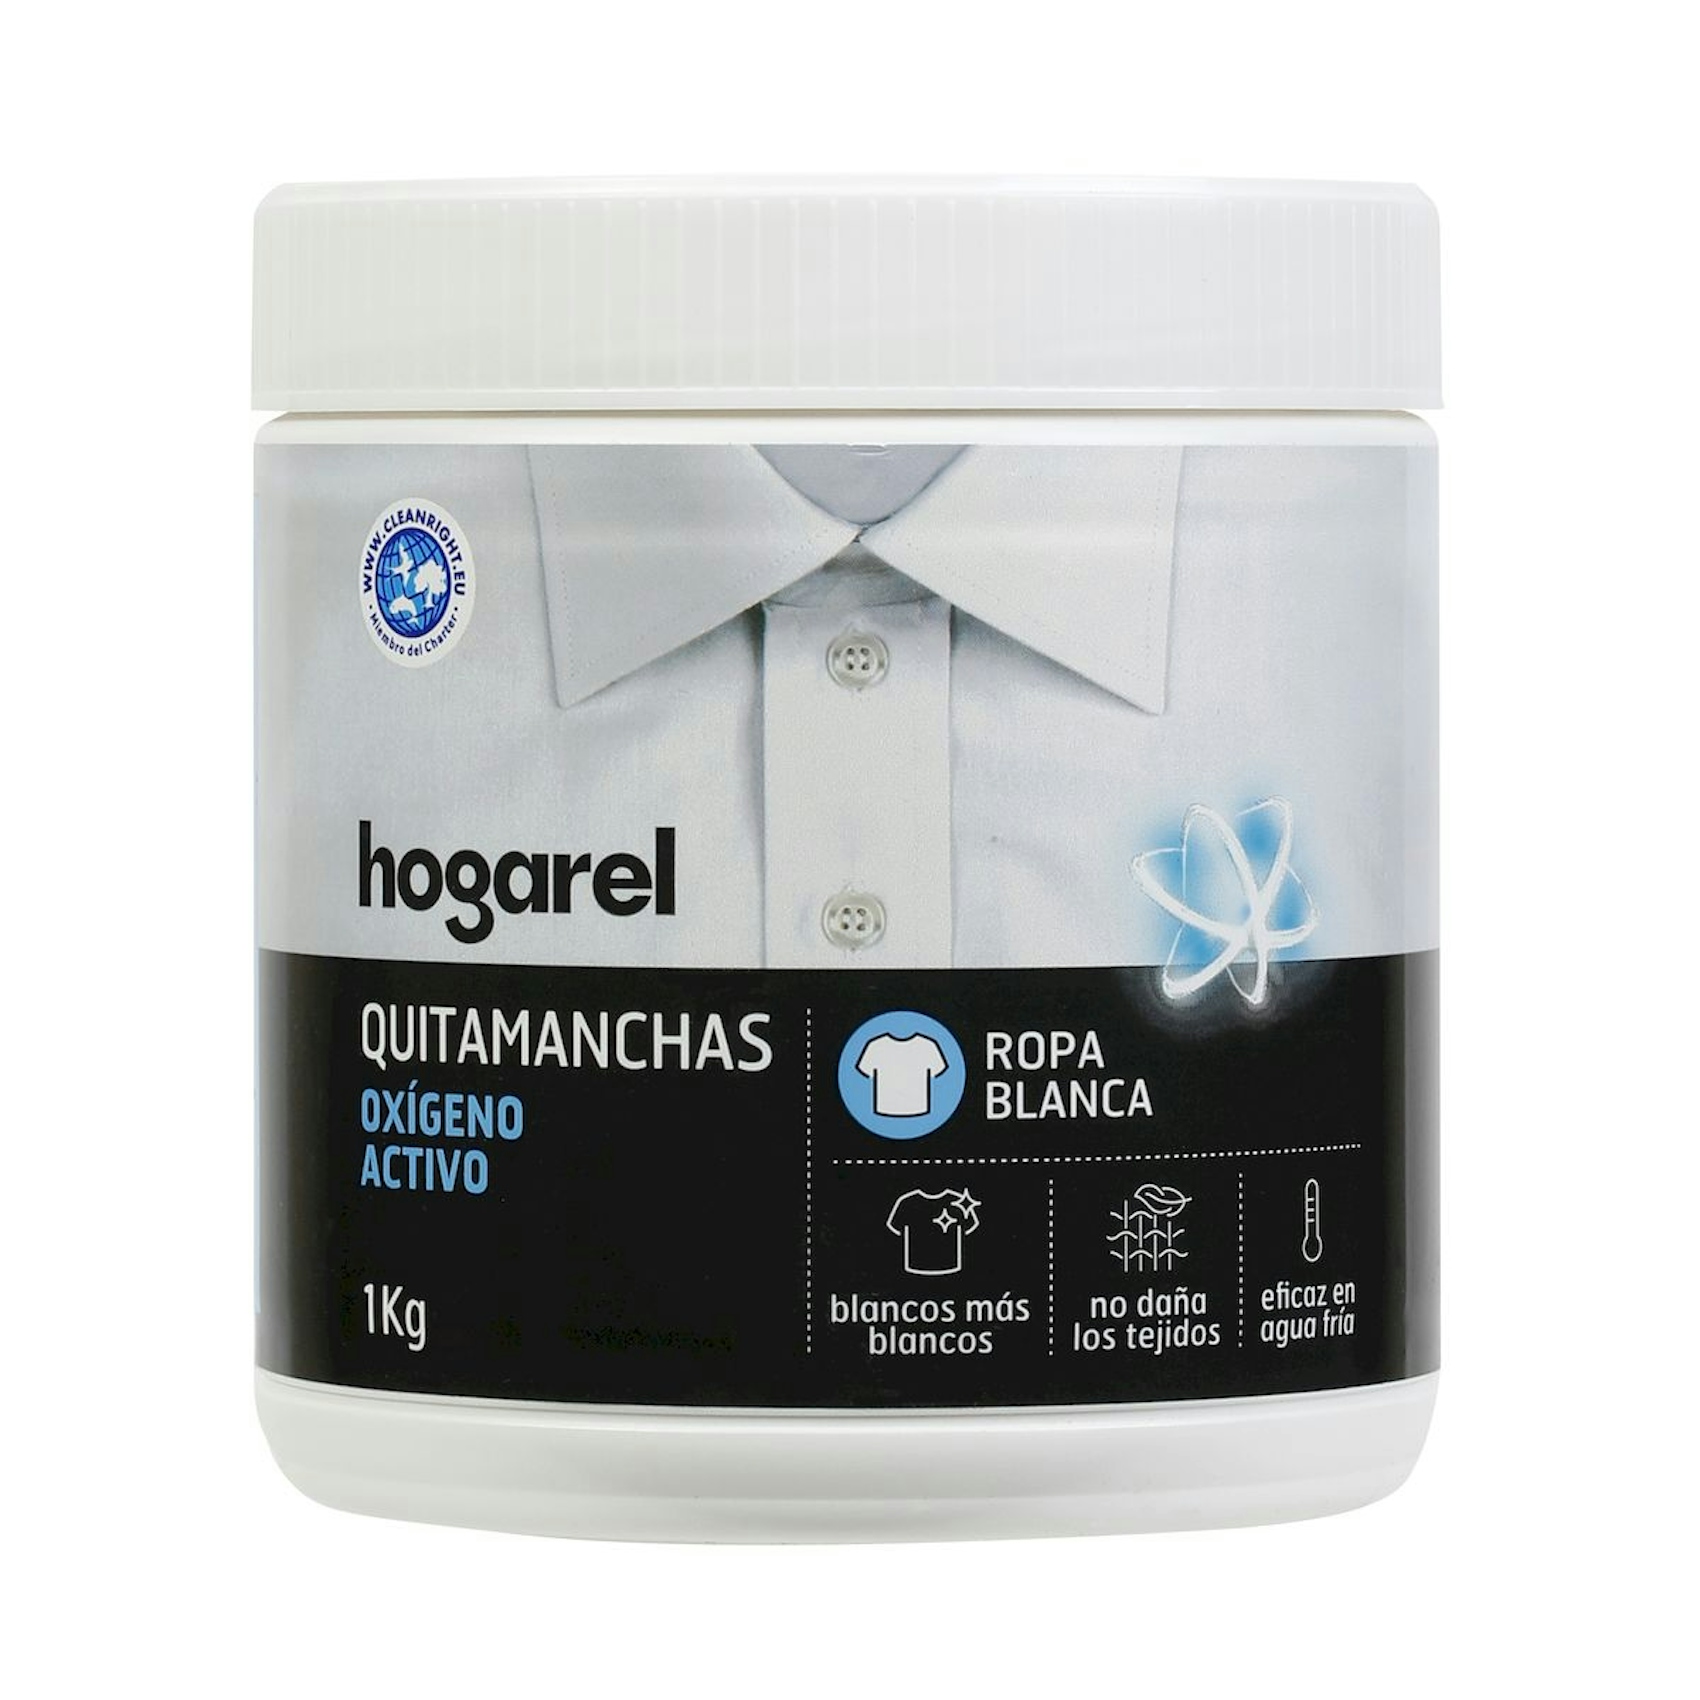 Quitamanchas Oxigeno Activo Hogarel Ropa Blanca 1 Kg